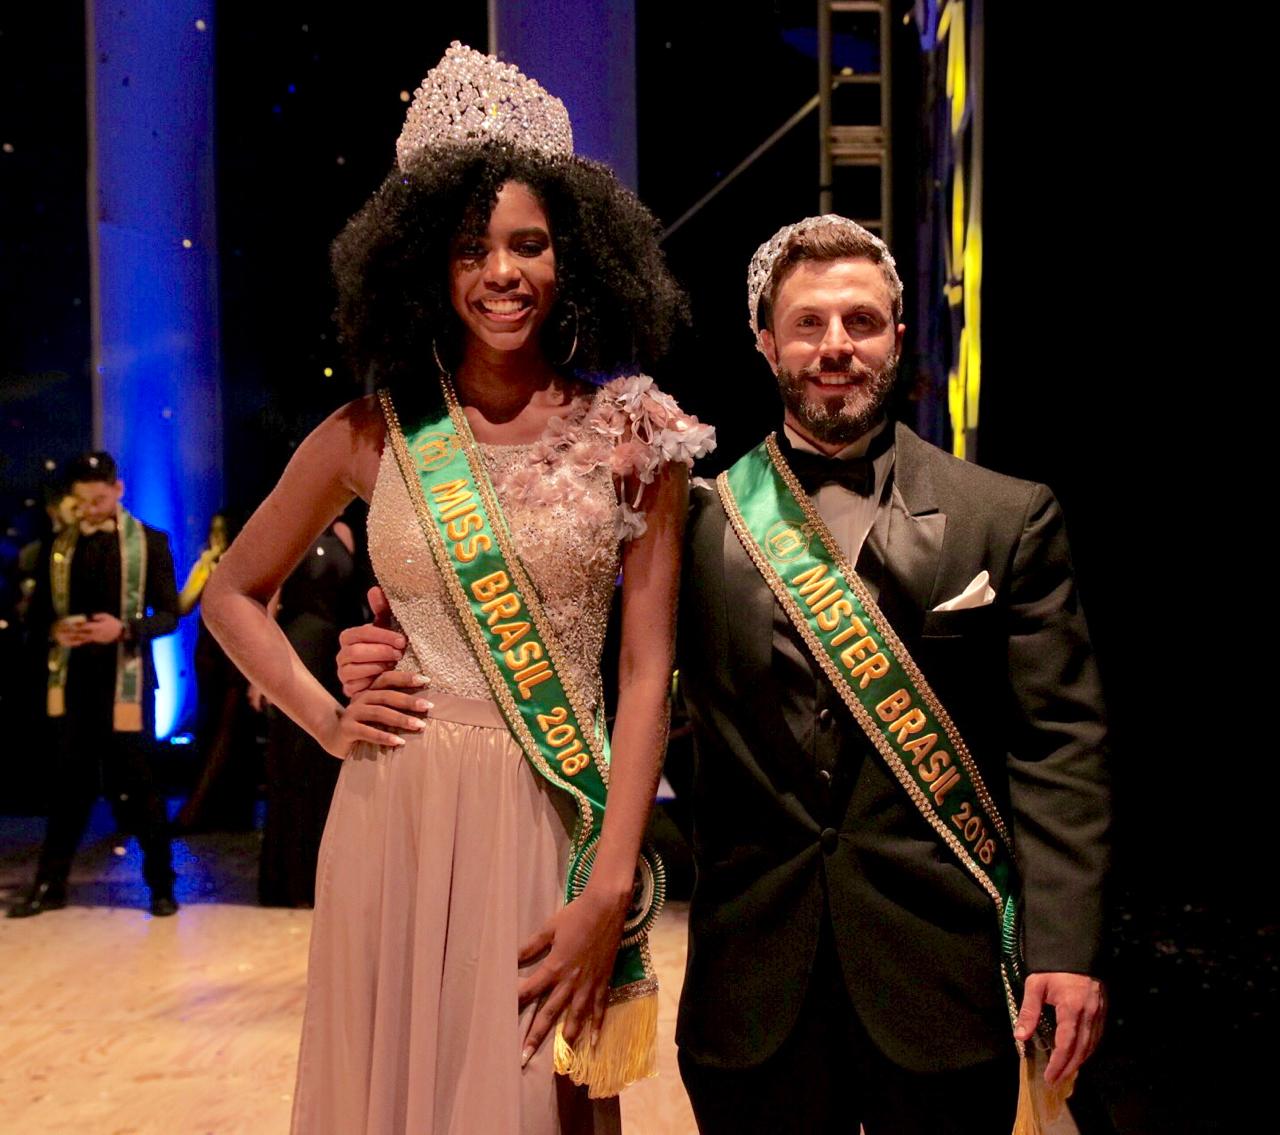 noticia Adryelhe Peixoto e Gabriel Ximenez são eleitos Miss e Mister Brasil 2018